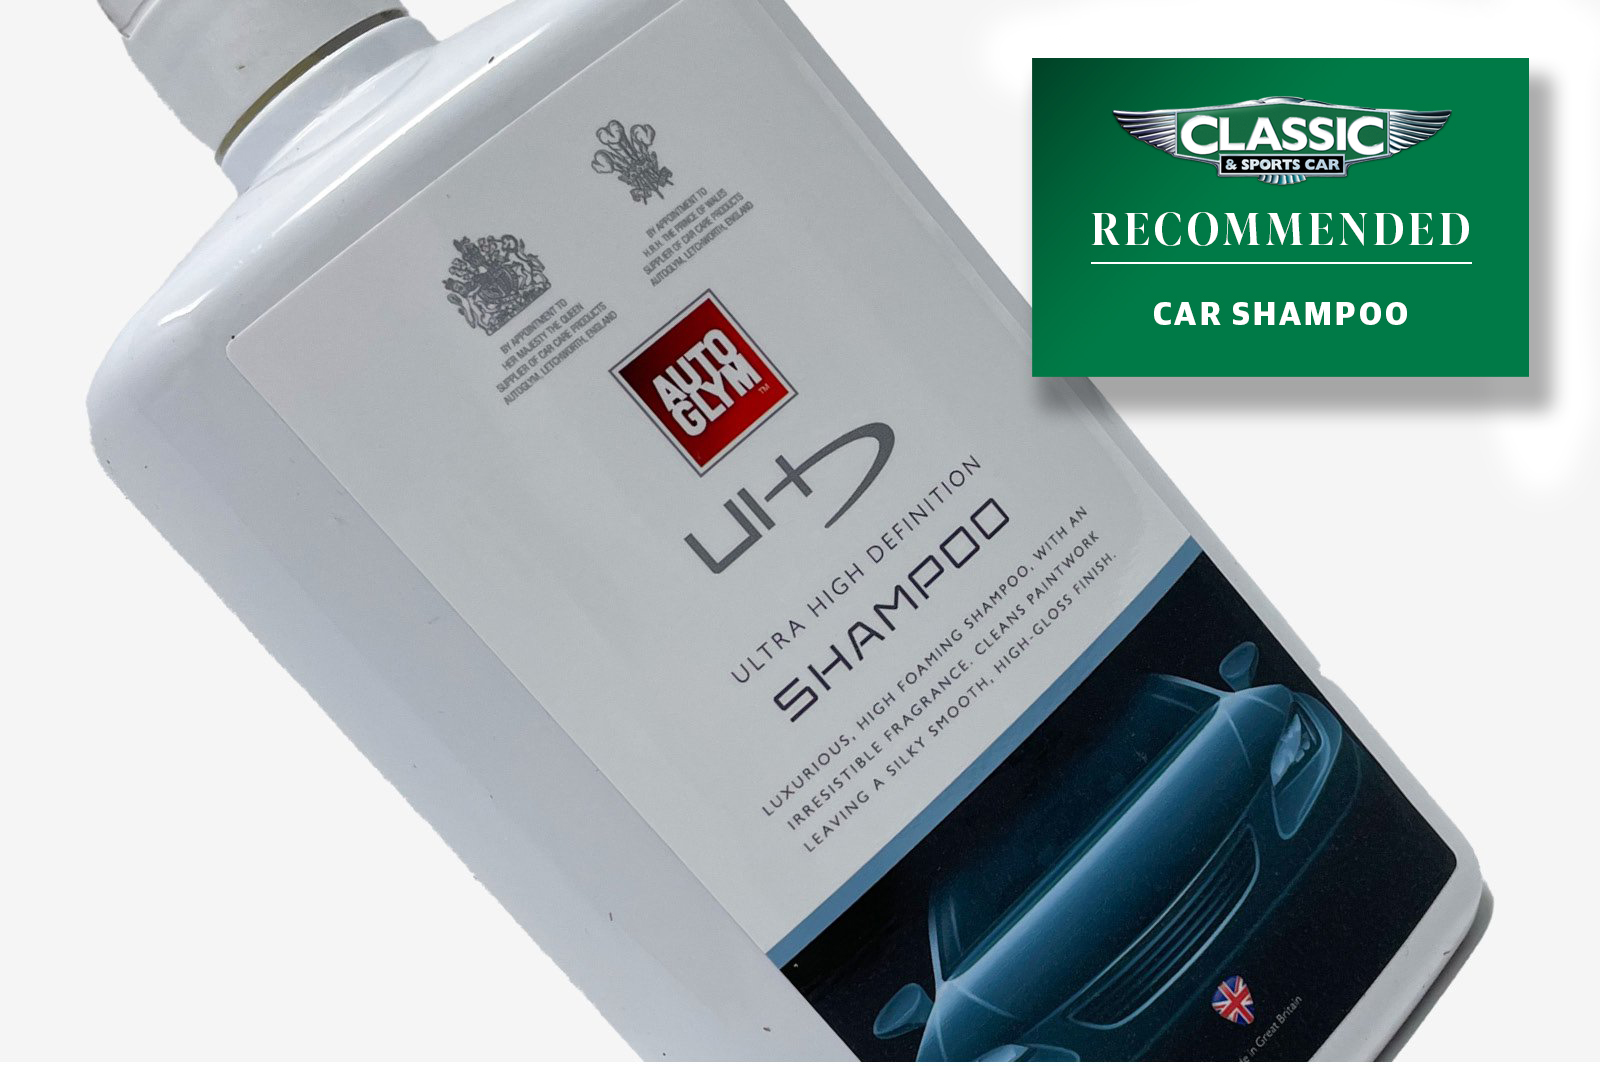 Classic & Sports Car - Best car shampoos